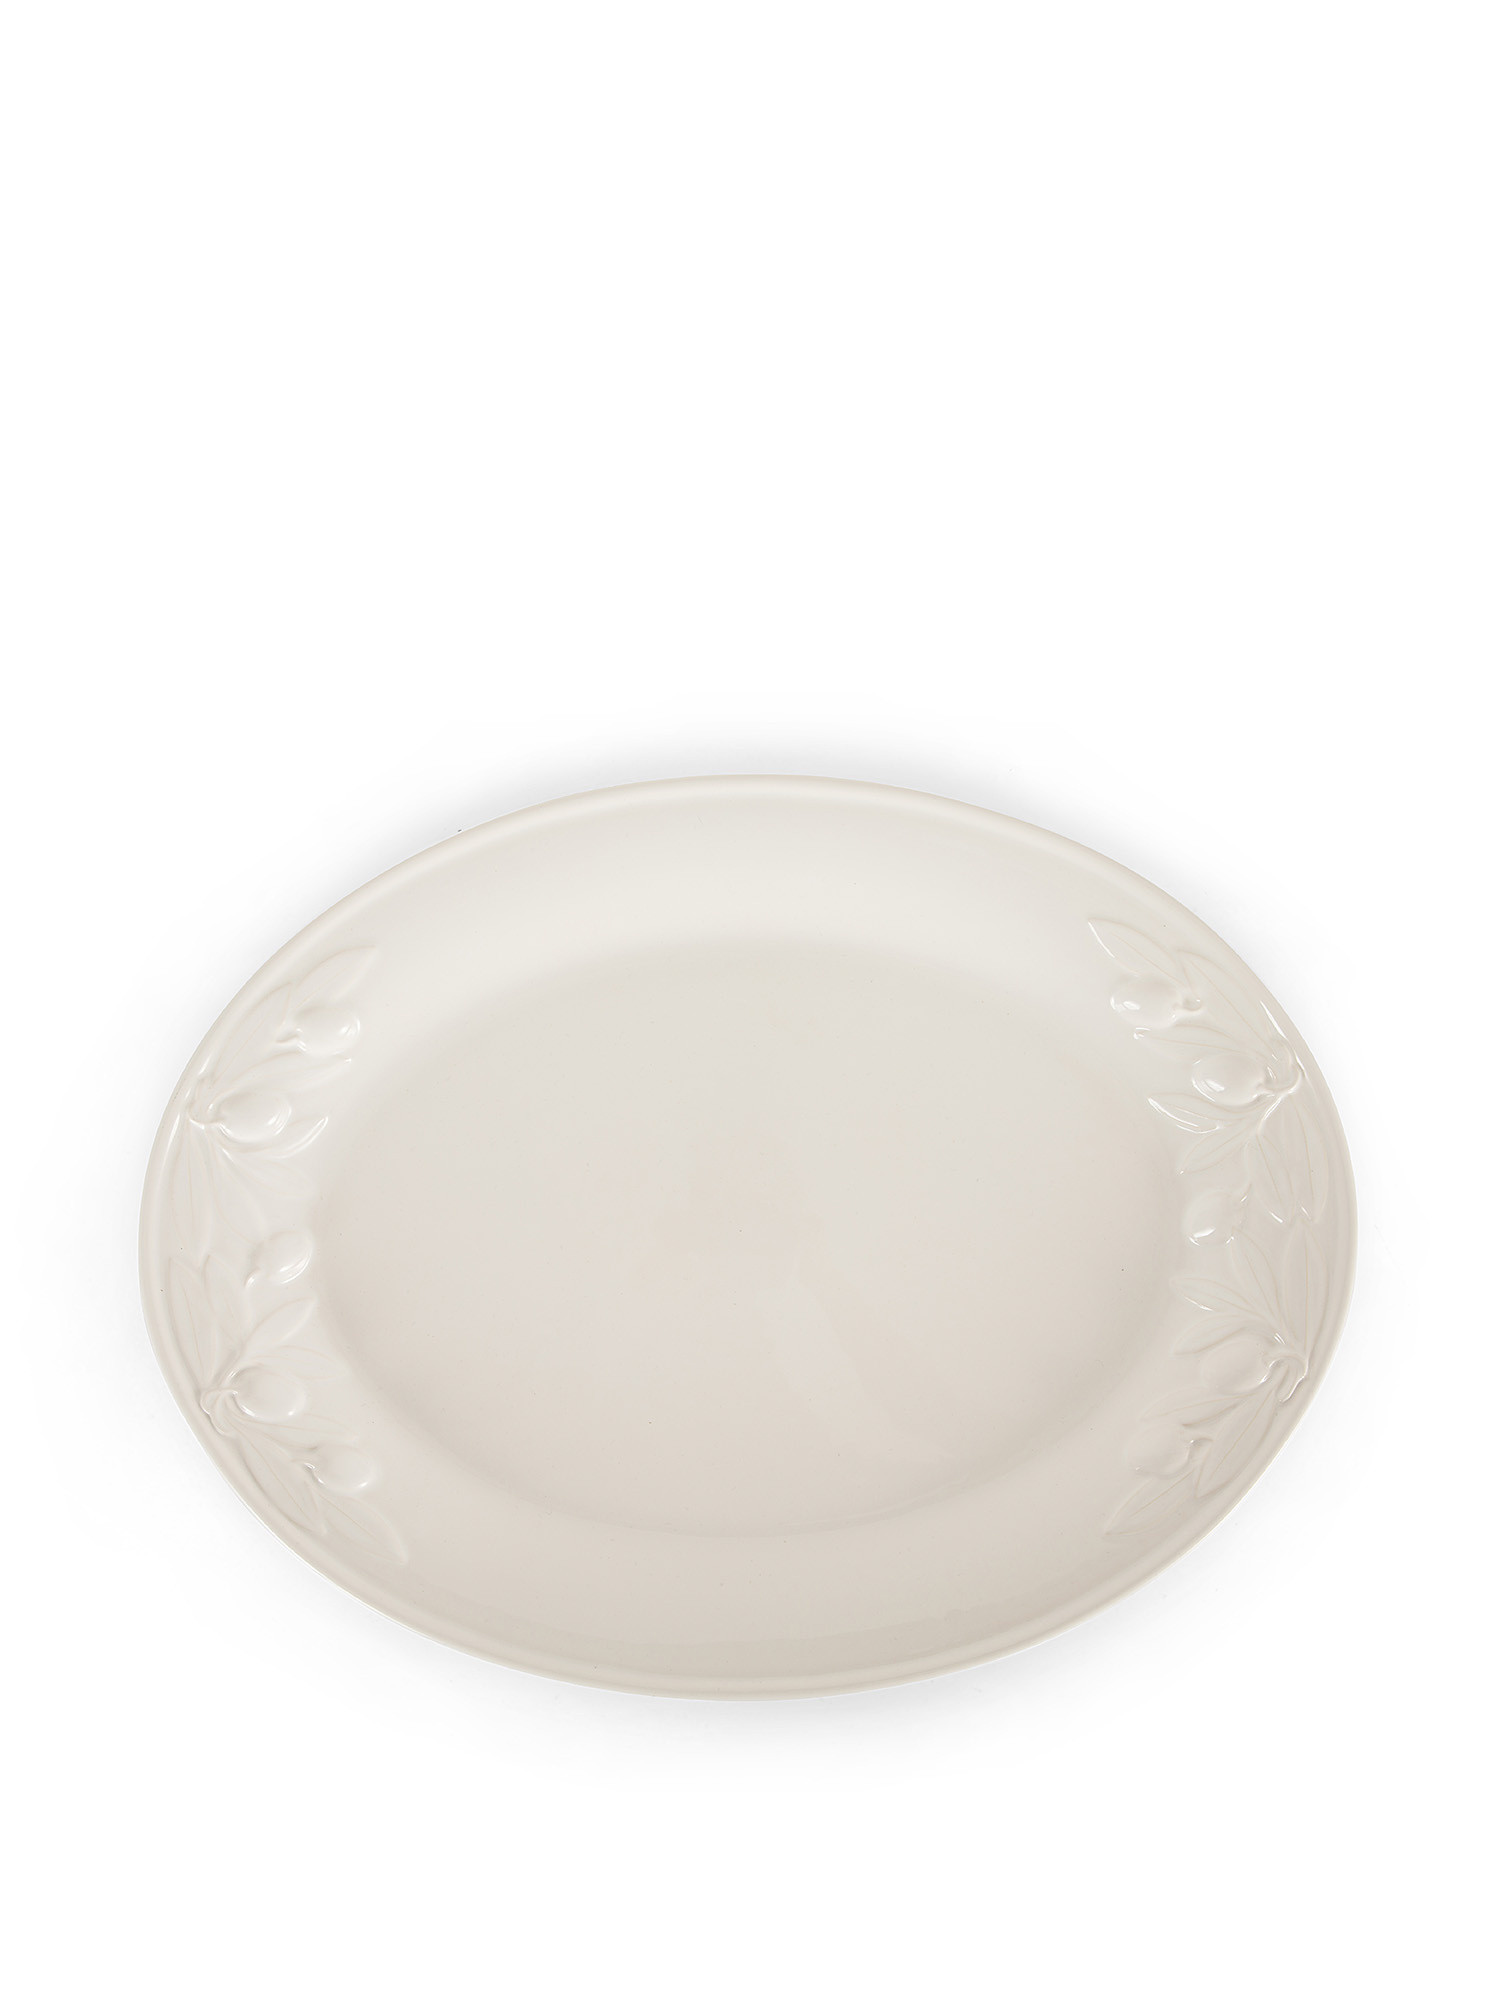 Piatto da portata ceramica dettaglio olive, Bianco, large image number 0